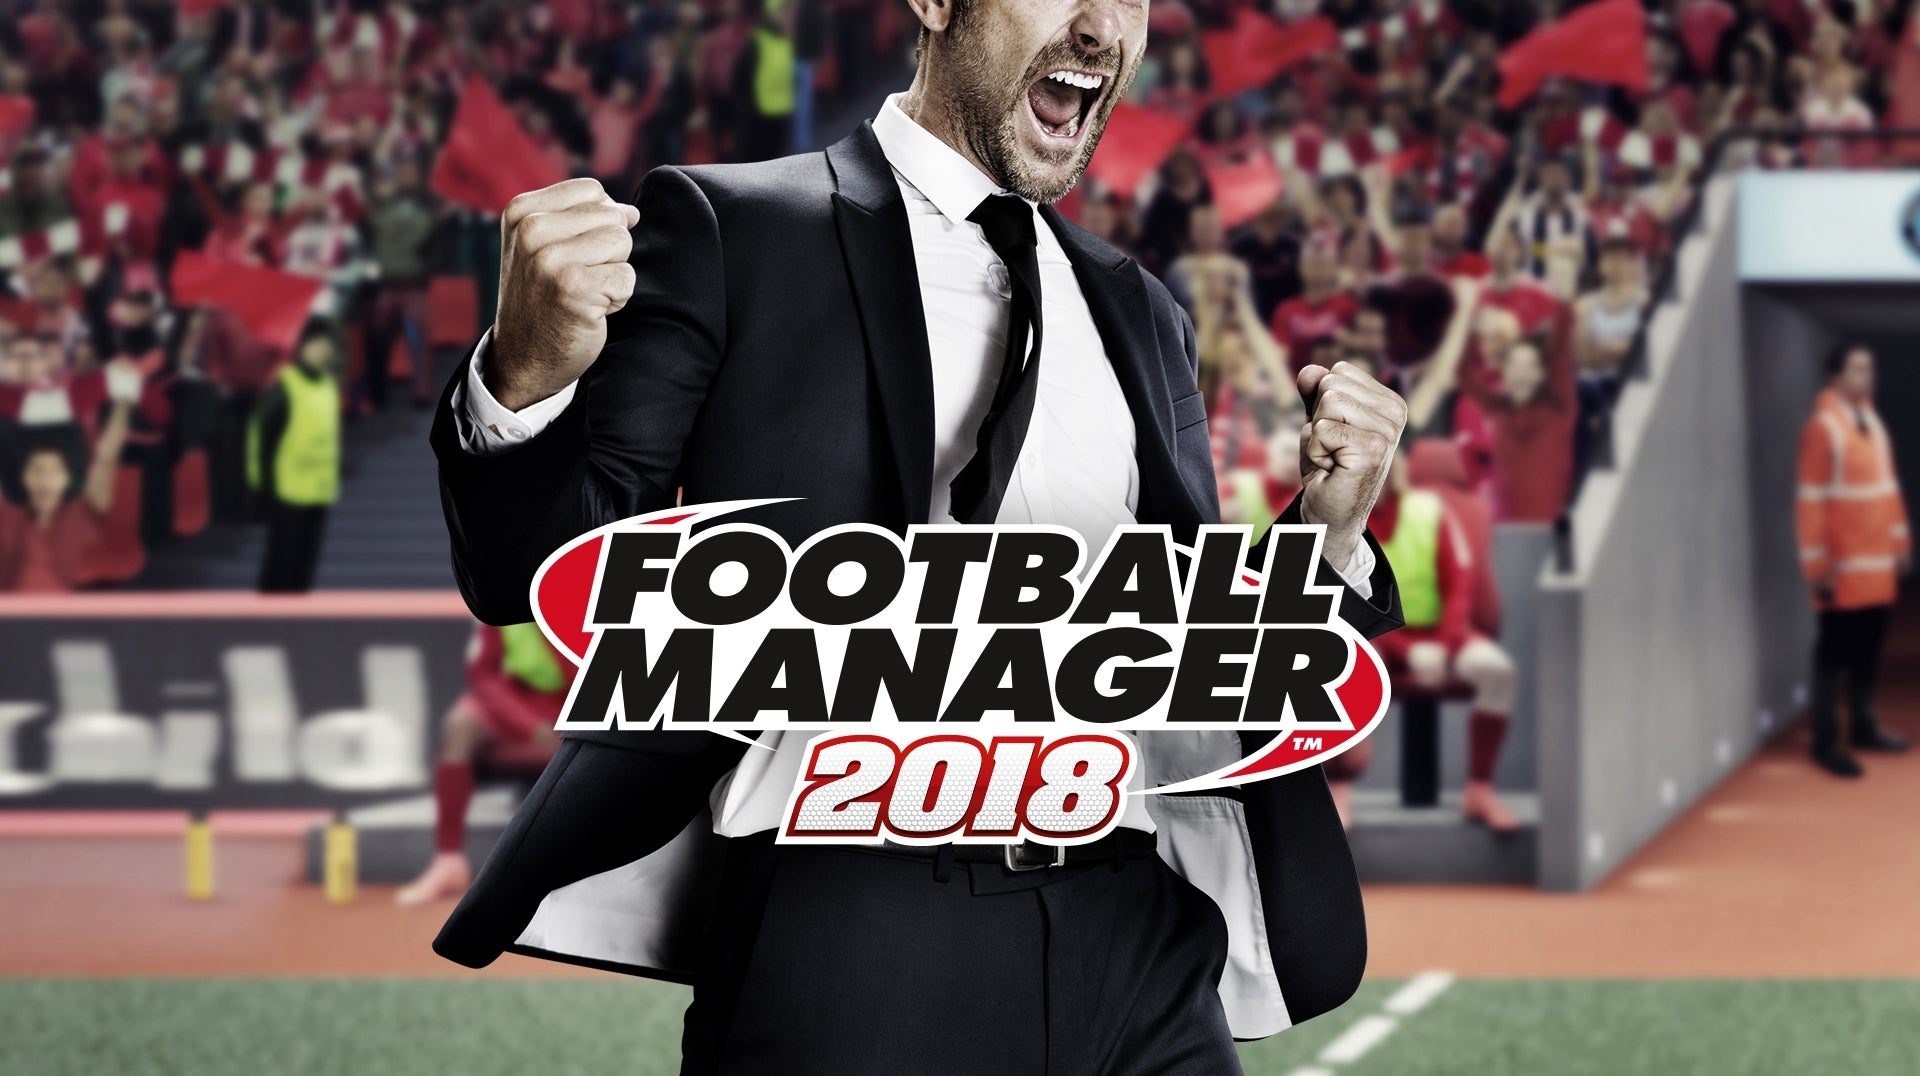 Imagen para Football Manager 2018 ha vendido un millón de copias